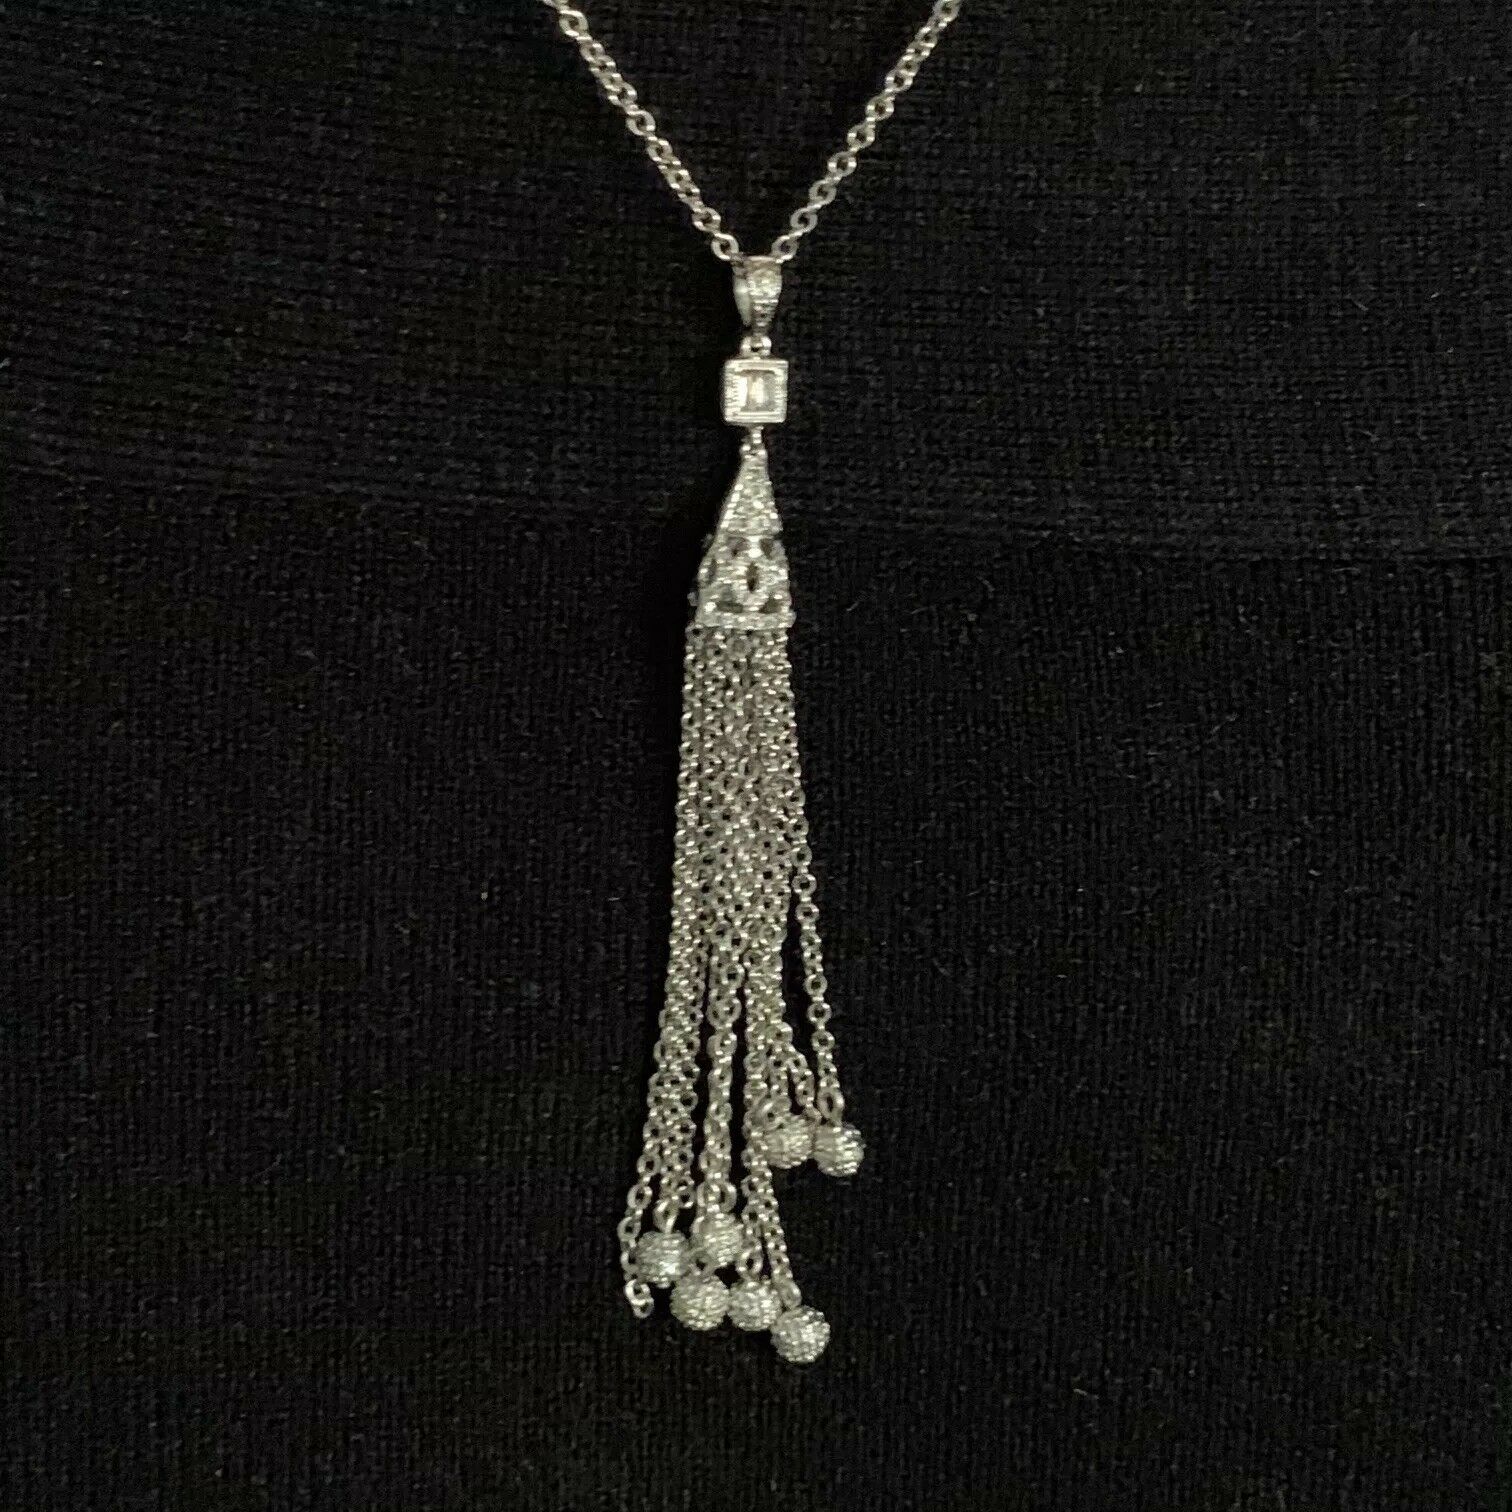 Diamond Necklace 18k Gold Tassel Pendant 19" Women Certified $3,000 820700 - Certified Fine Jewelry